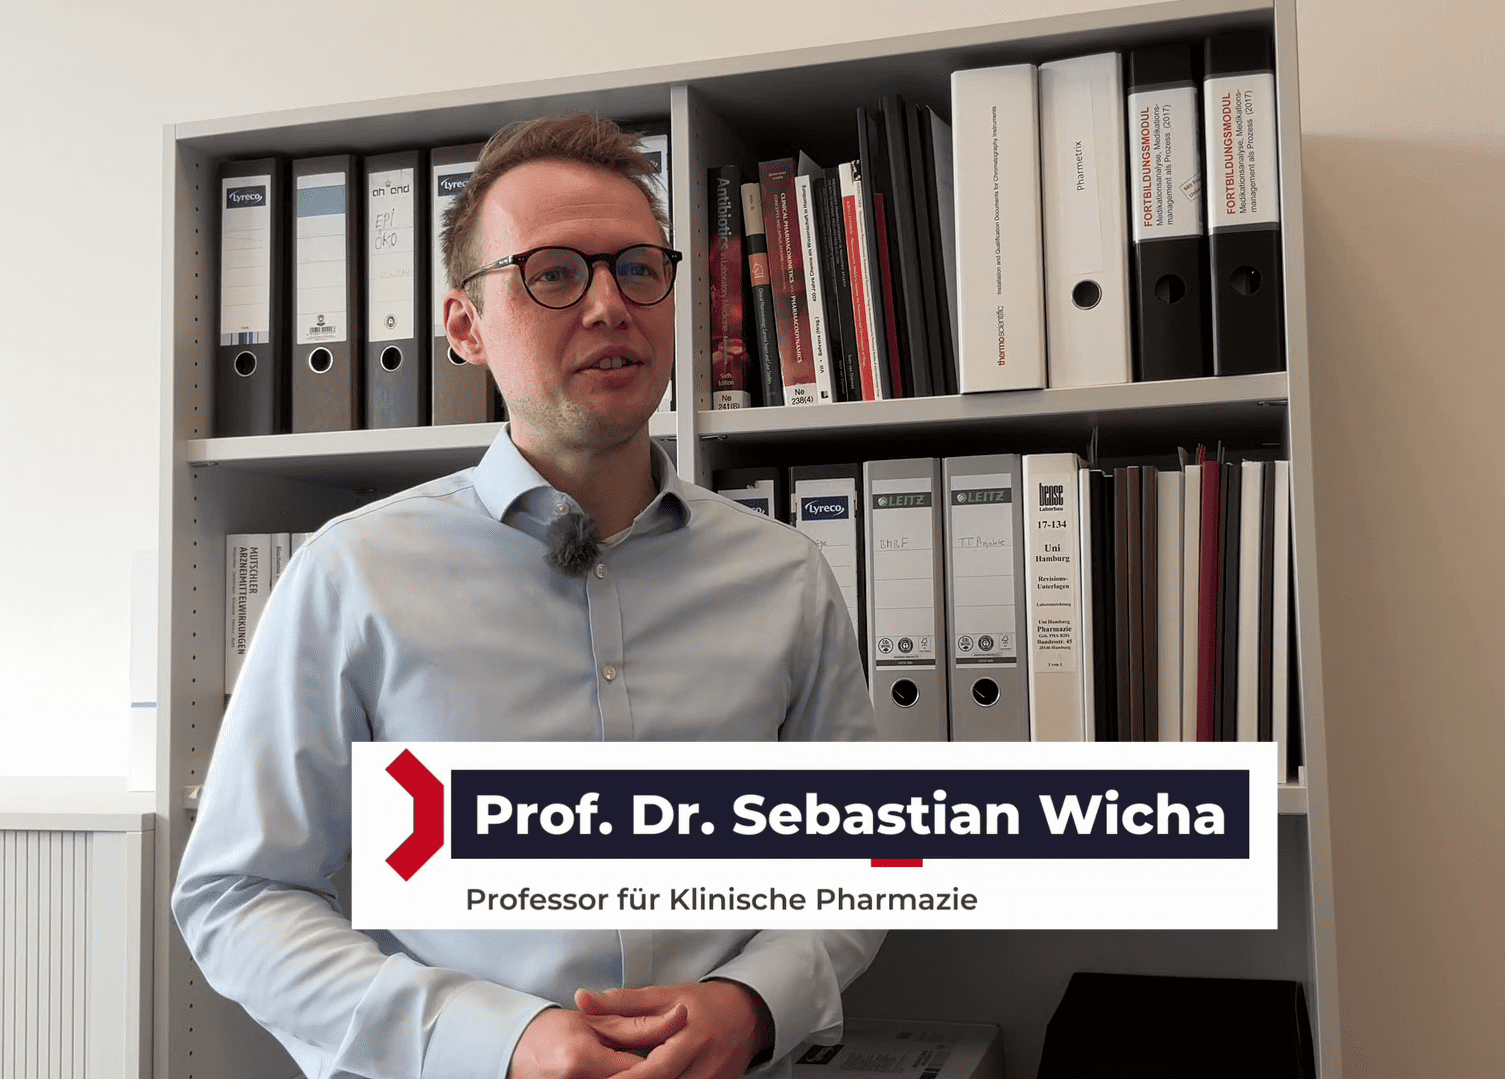 Forschung für die Patienten: Professor Sebastian Wicha ist an der Universität Hamburg im Bereich der Klinischen Pharmazie tätig und leitet entsprechend die Arbeitsgruppe "Clinical Pharmacy".